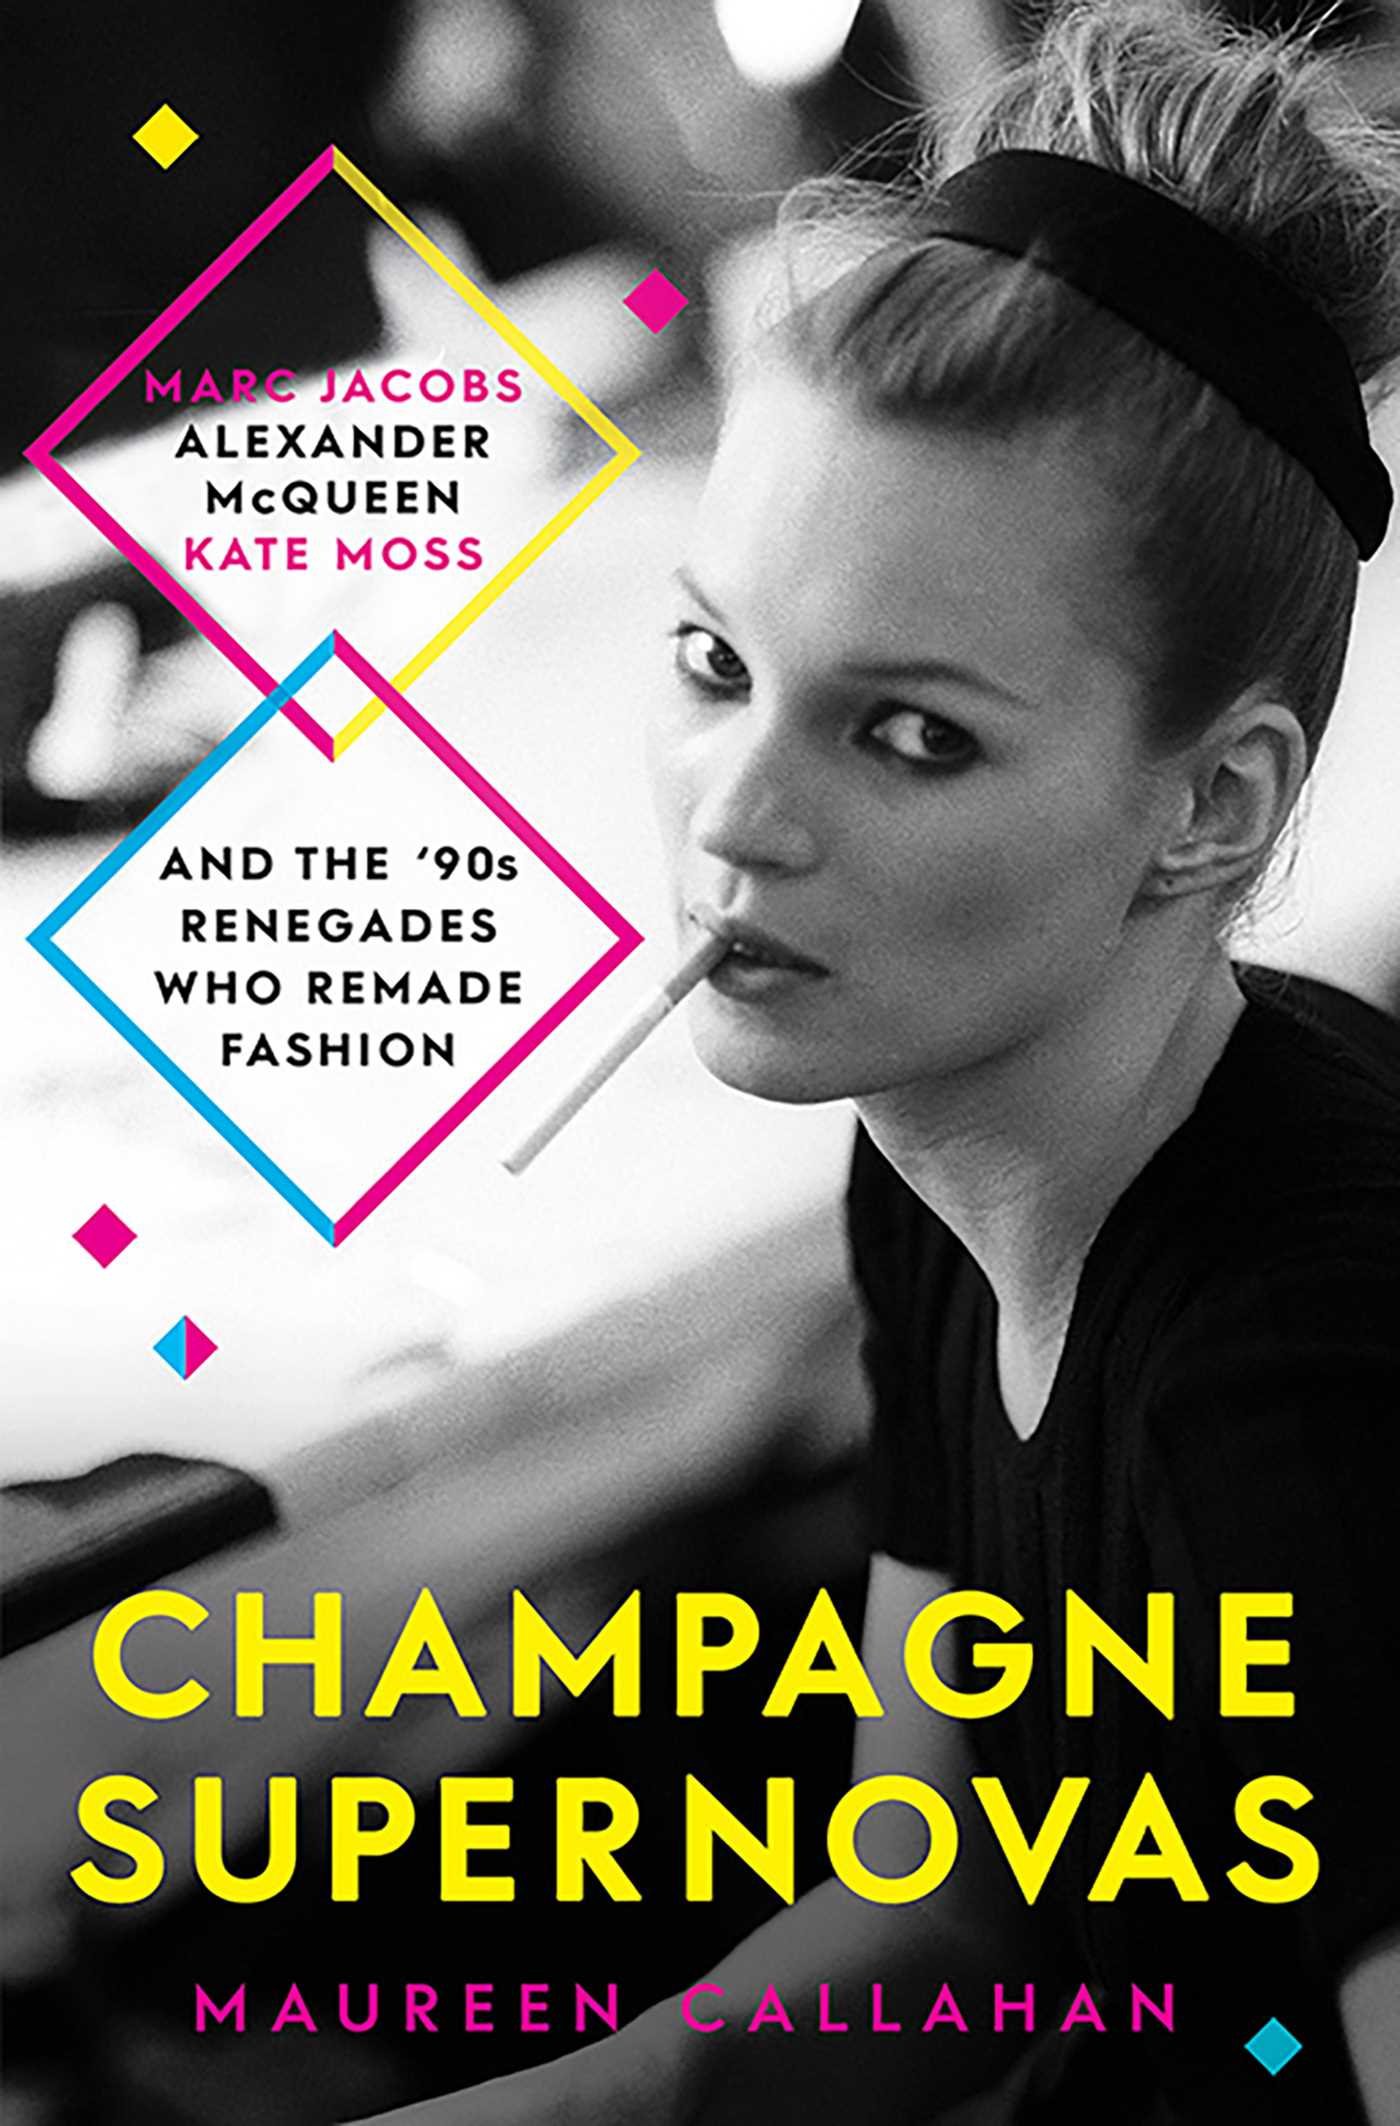 Kate, Jacobs y McQueen: Las historias de “Champagne Supernovas” serán una serie